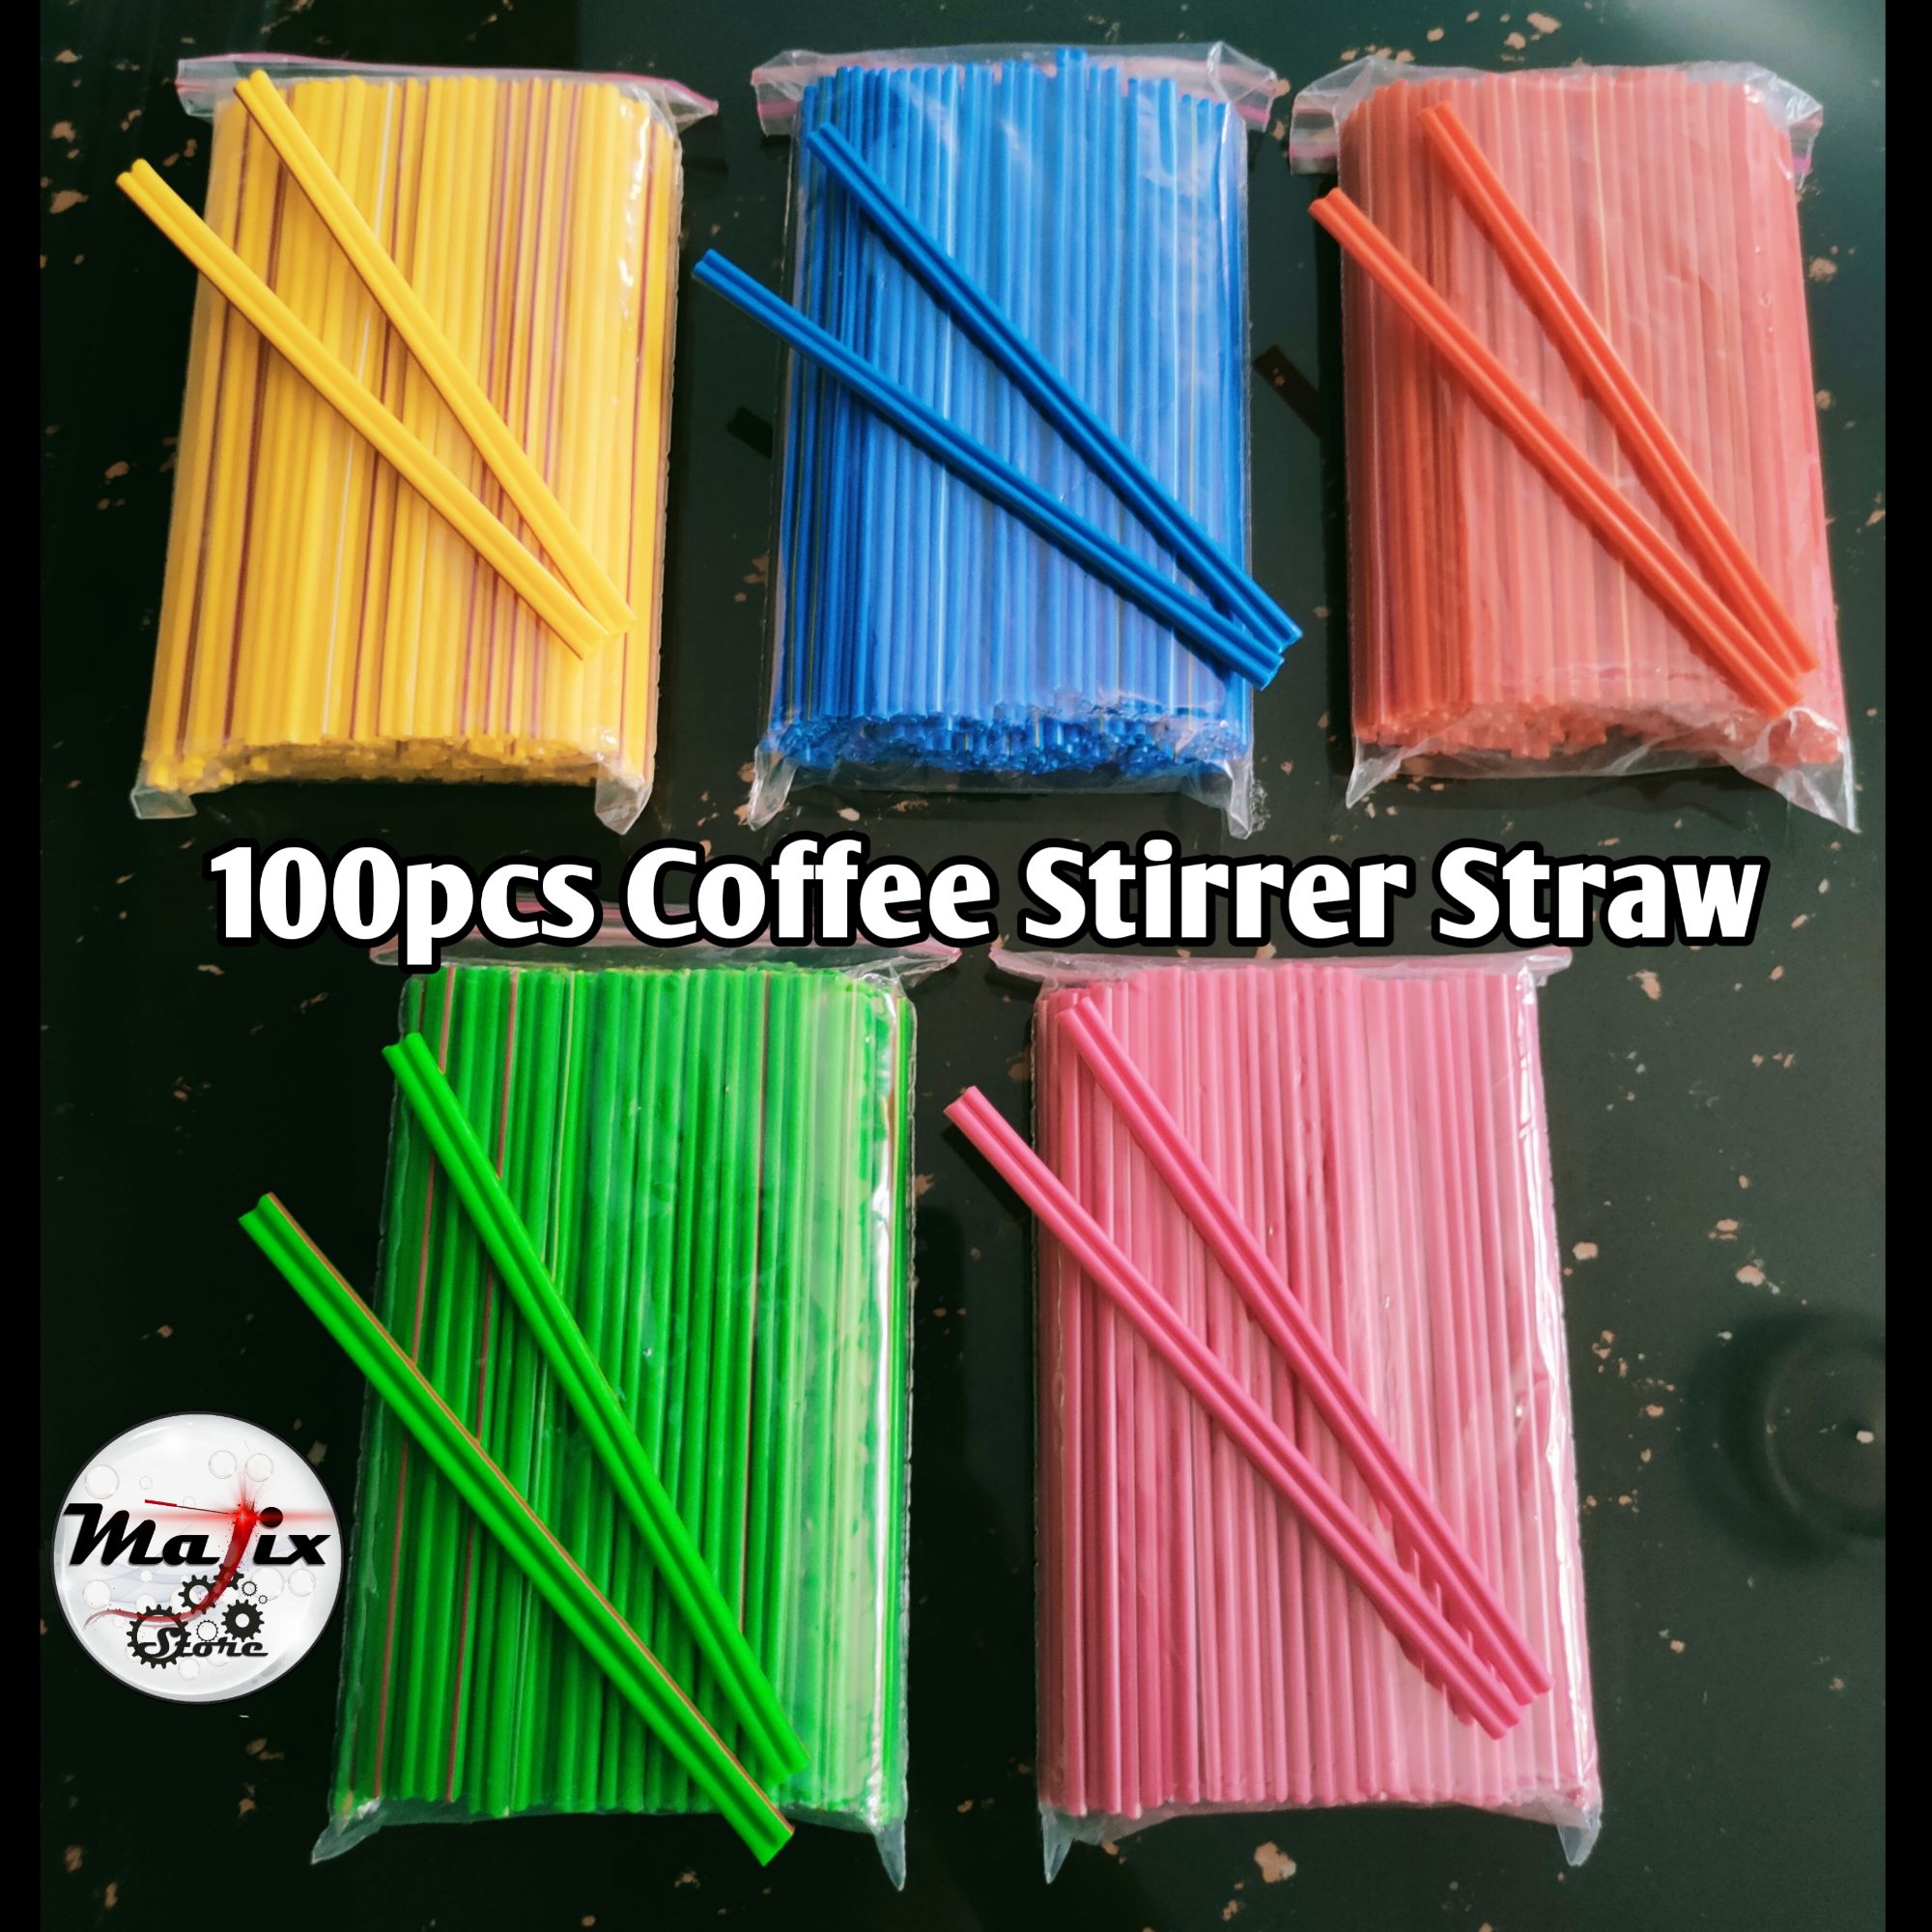 Coffee Stirrers - Stone Straw